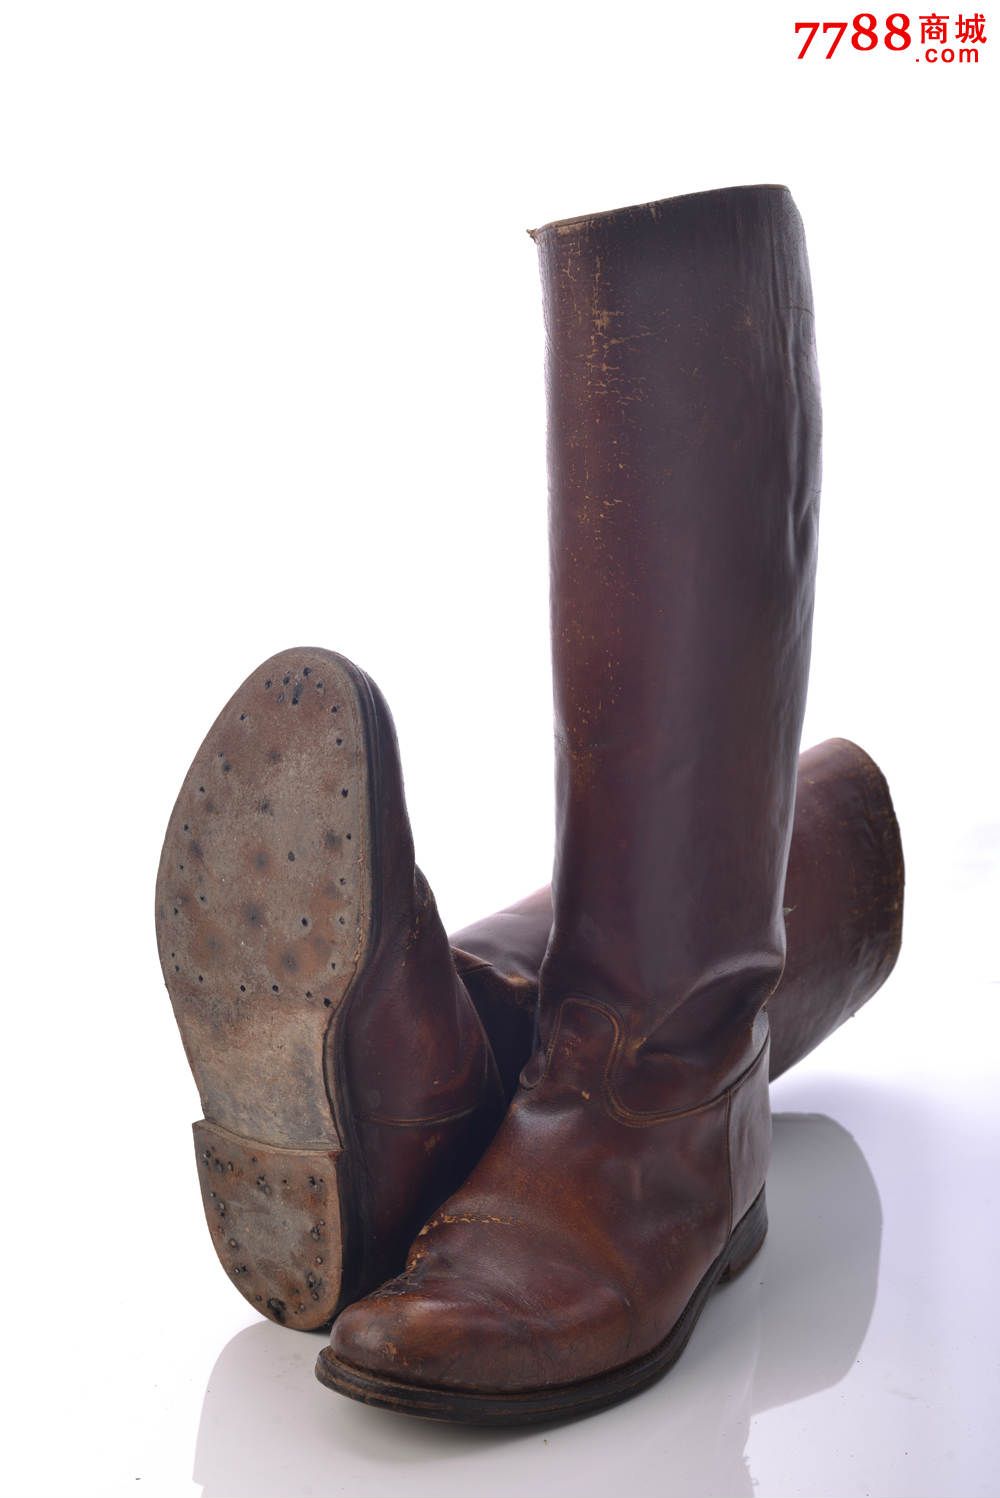 日军军官大号定制棕色全牛皮二战马靴高50厘米